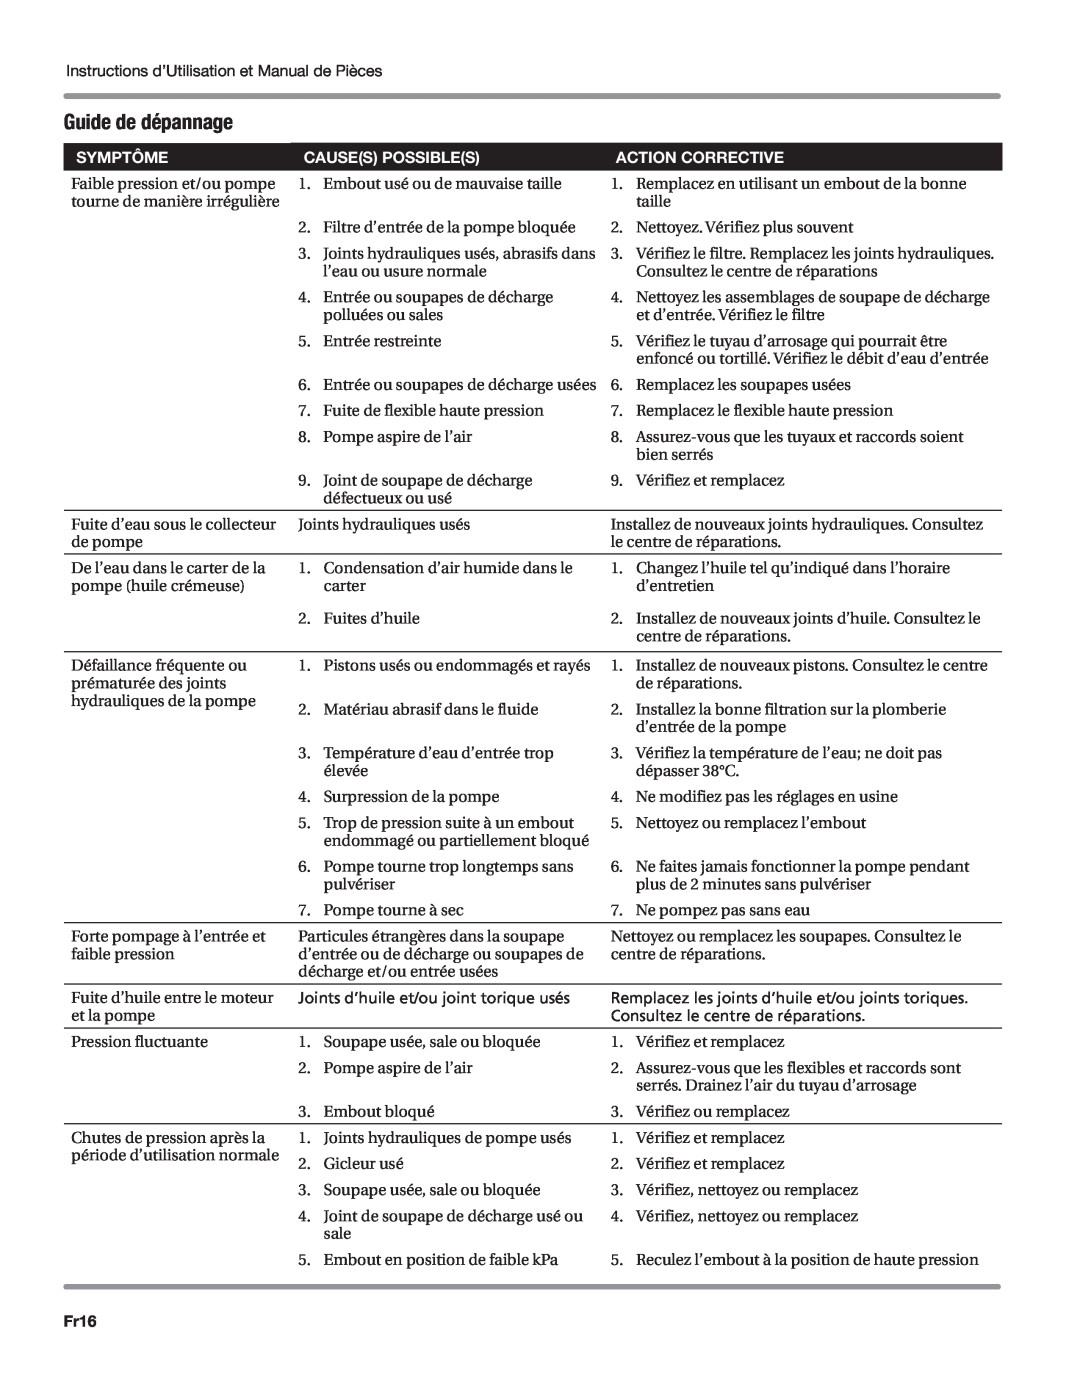 Campbell Hausfeld CP5101 manual Guide de dépannage, Symptôme, Causes possibles, Action corrective, Fr16 